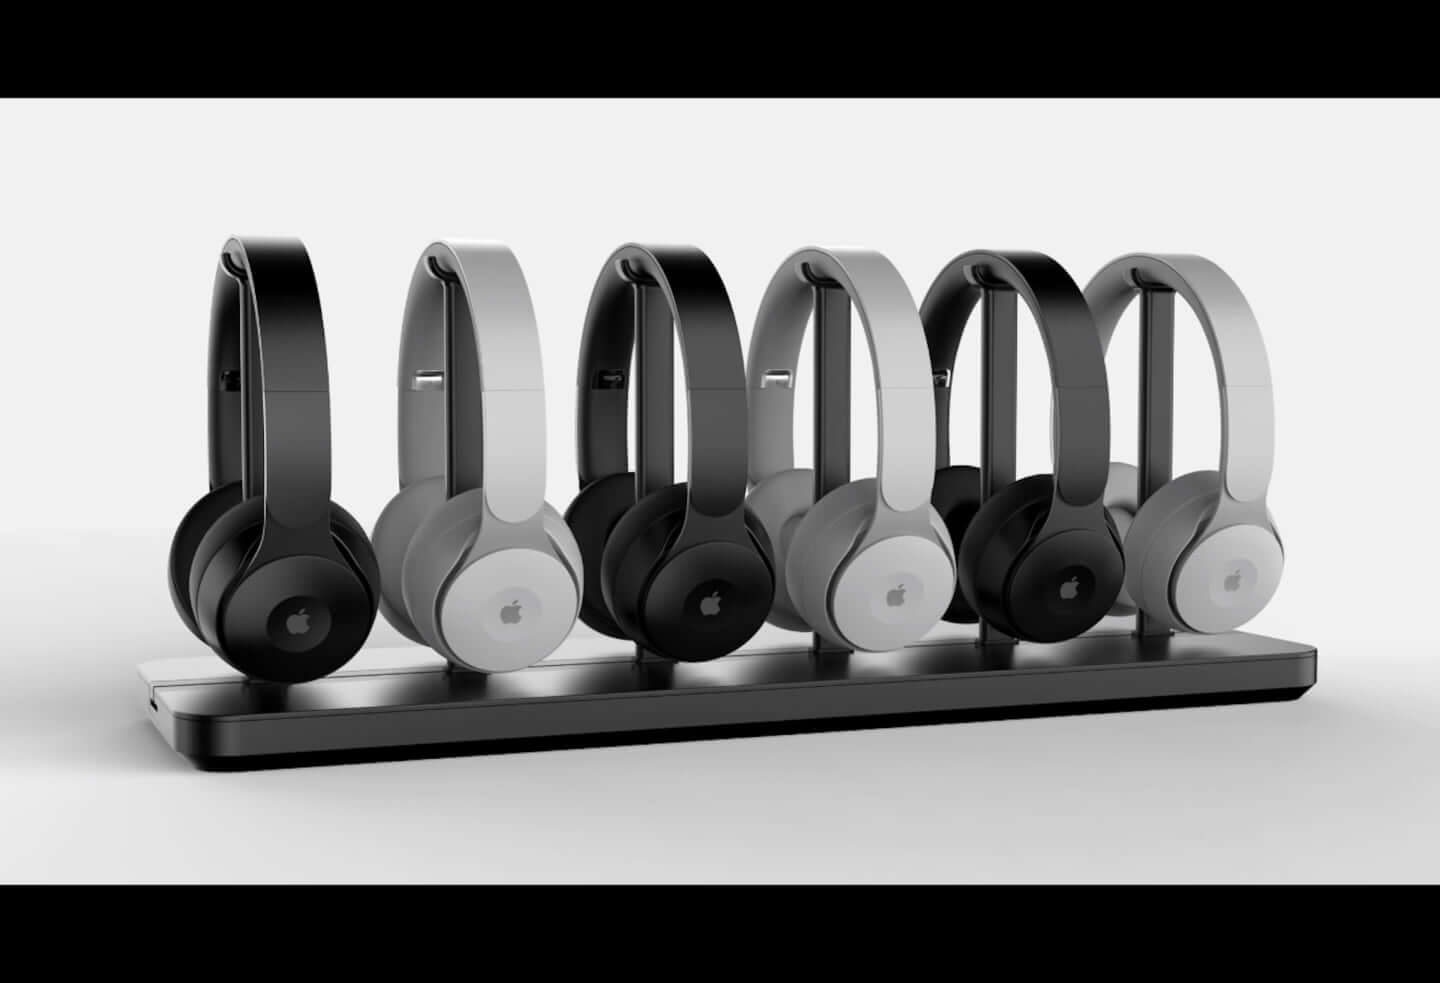 Appleから登場する初のワイヤレスヘッドホンは磁力で付け替えできるイヤーパッド ヘッドバンドを採用 年4月17日 エキサイトニュース